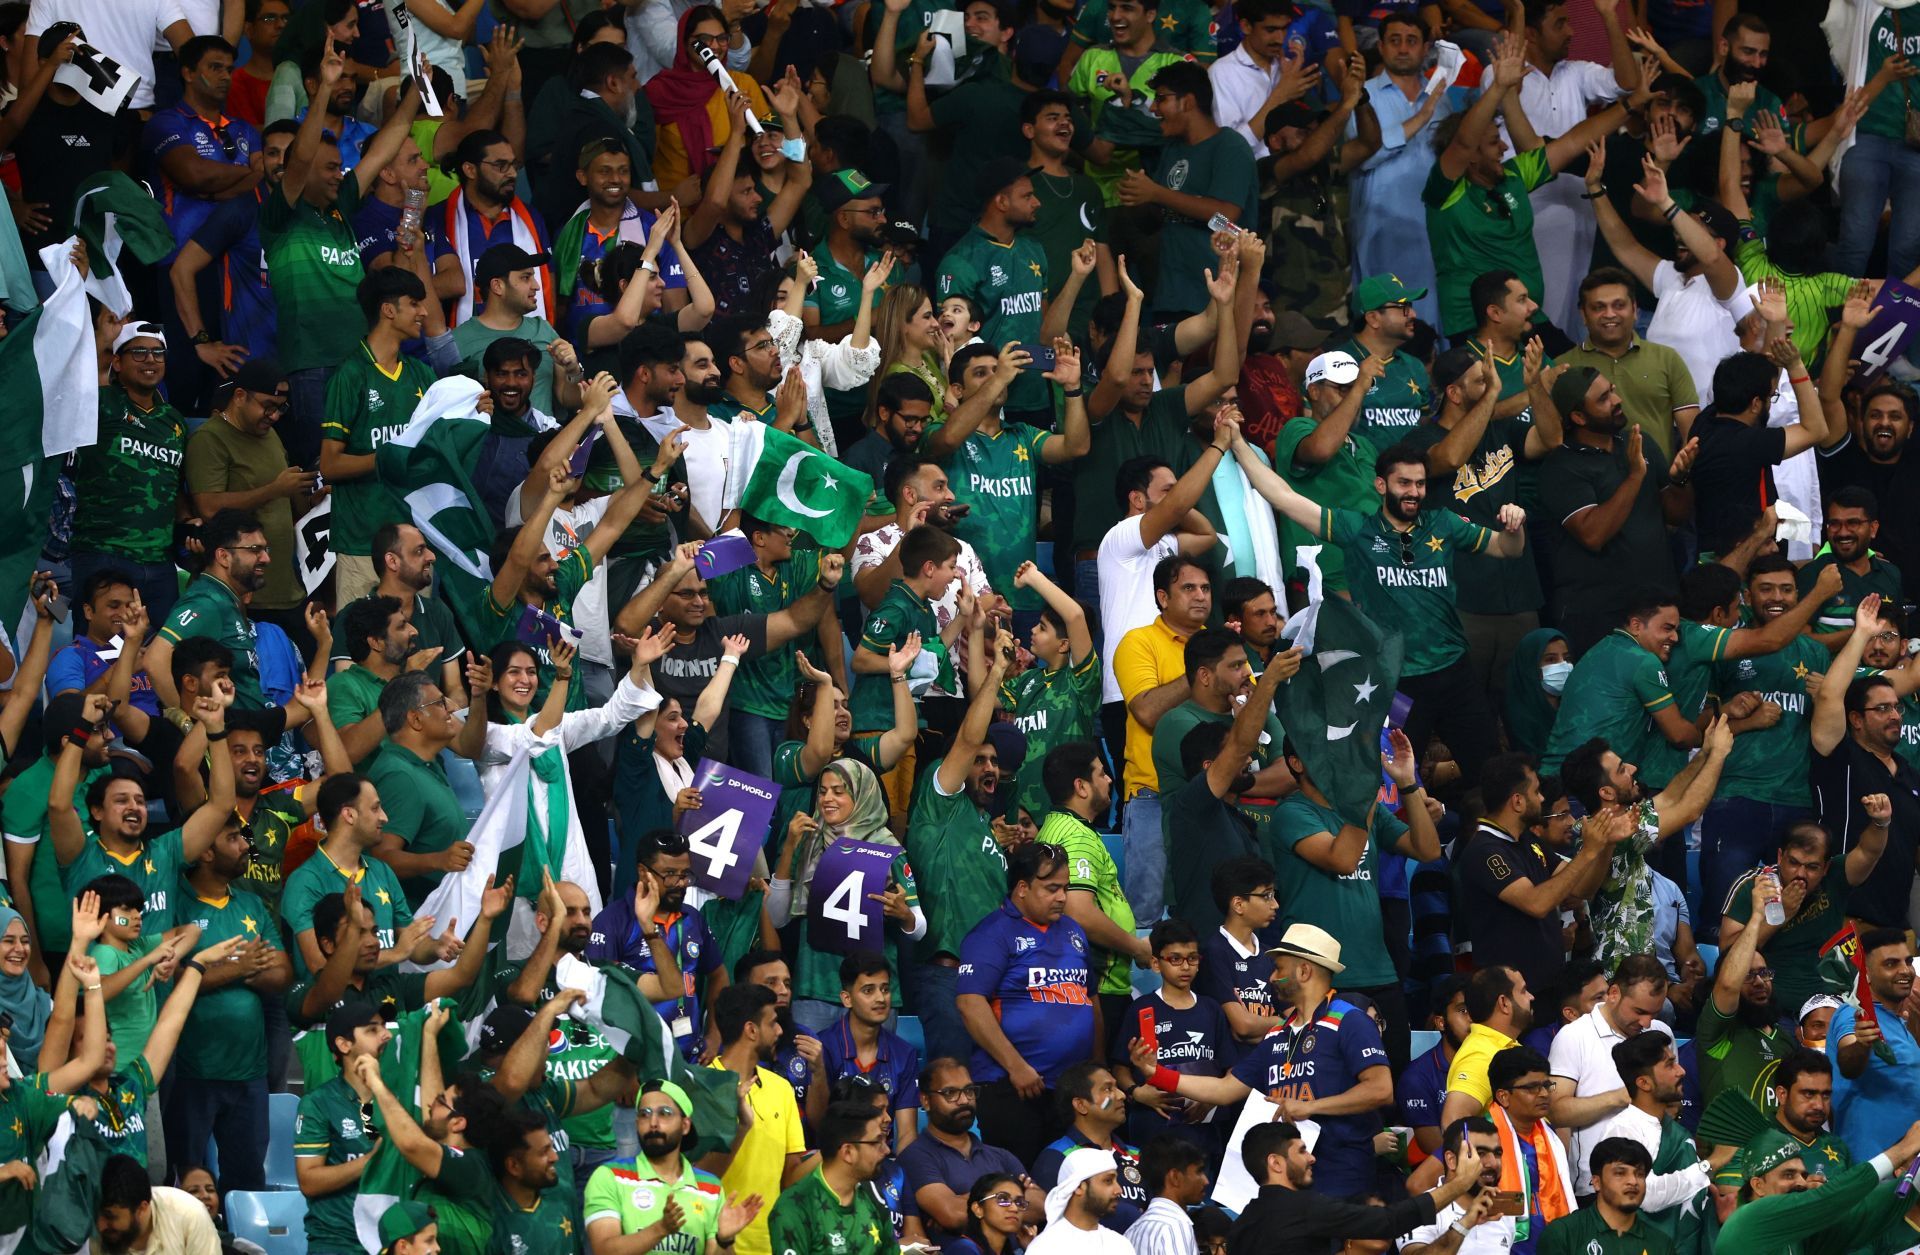 Pakistan fans rejoiced as Bhuvneshwar Kumar leaked 19 runs in the penultimate over